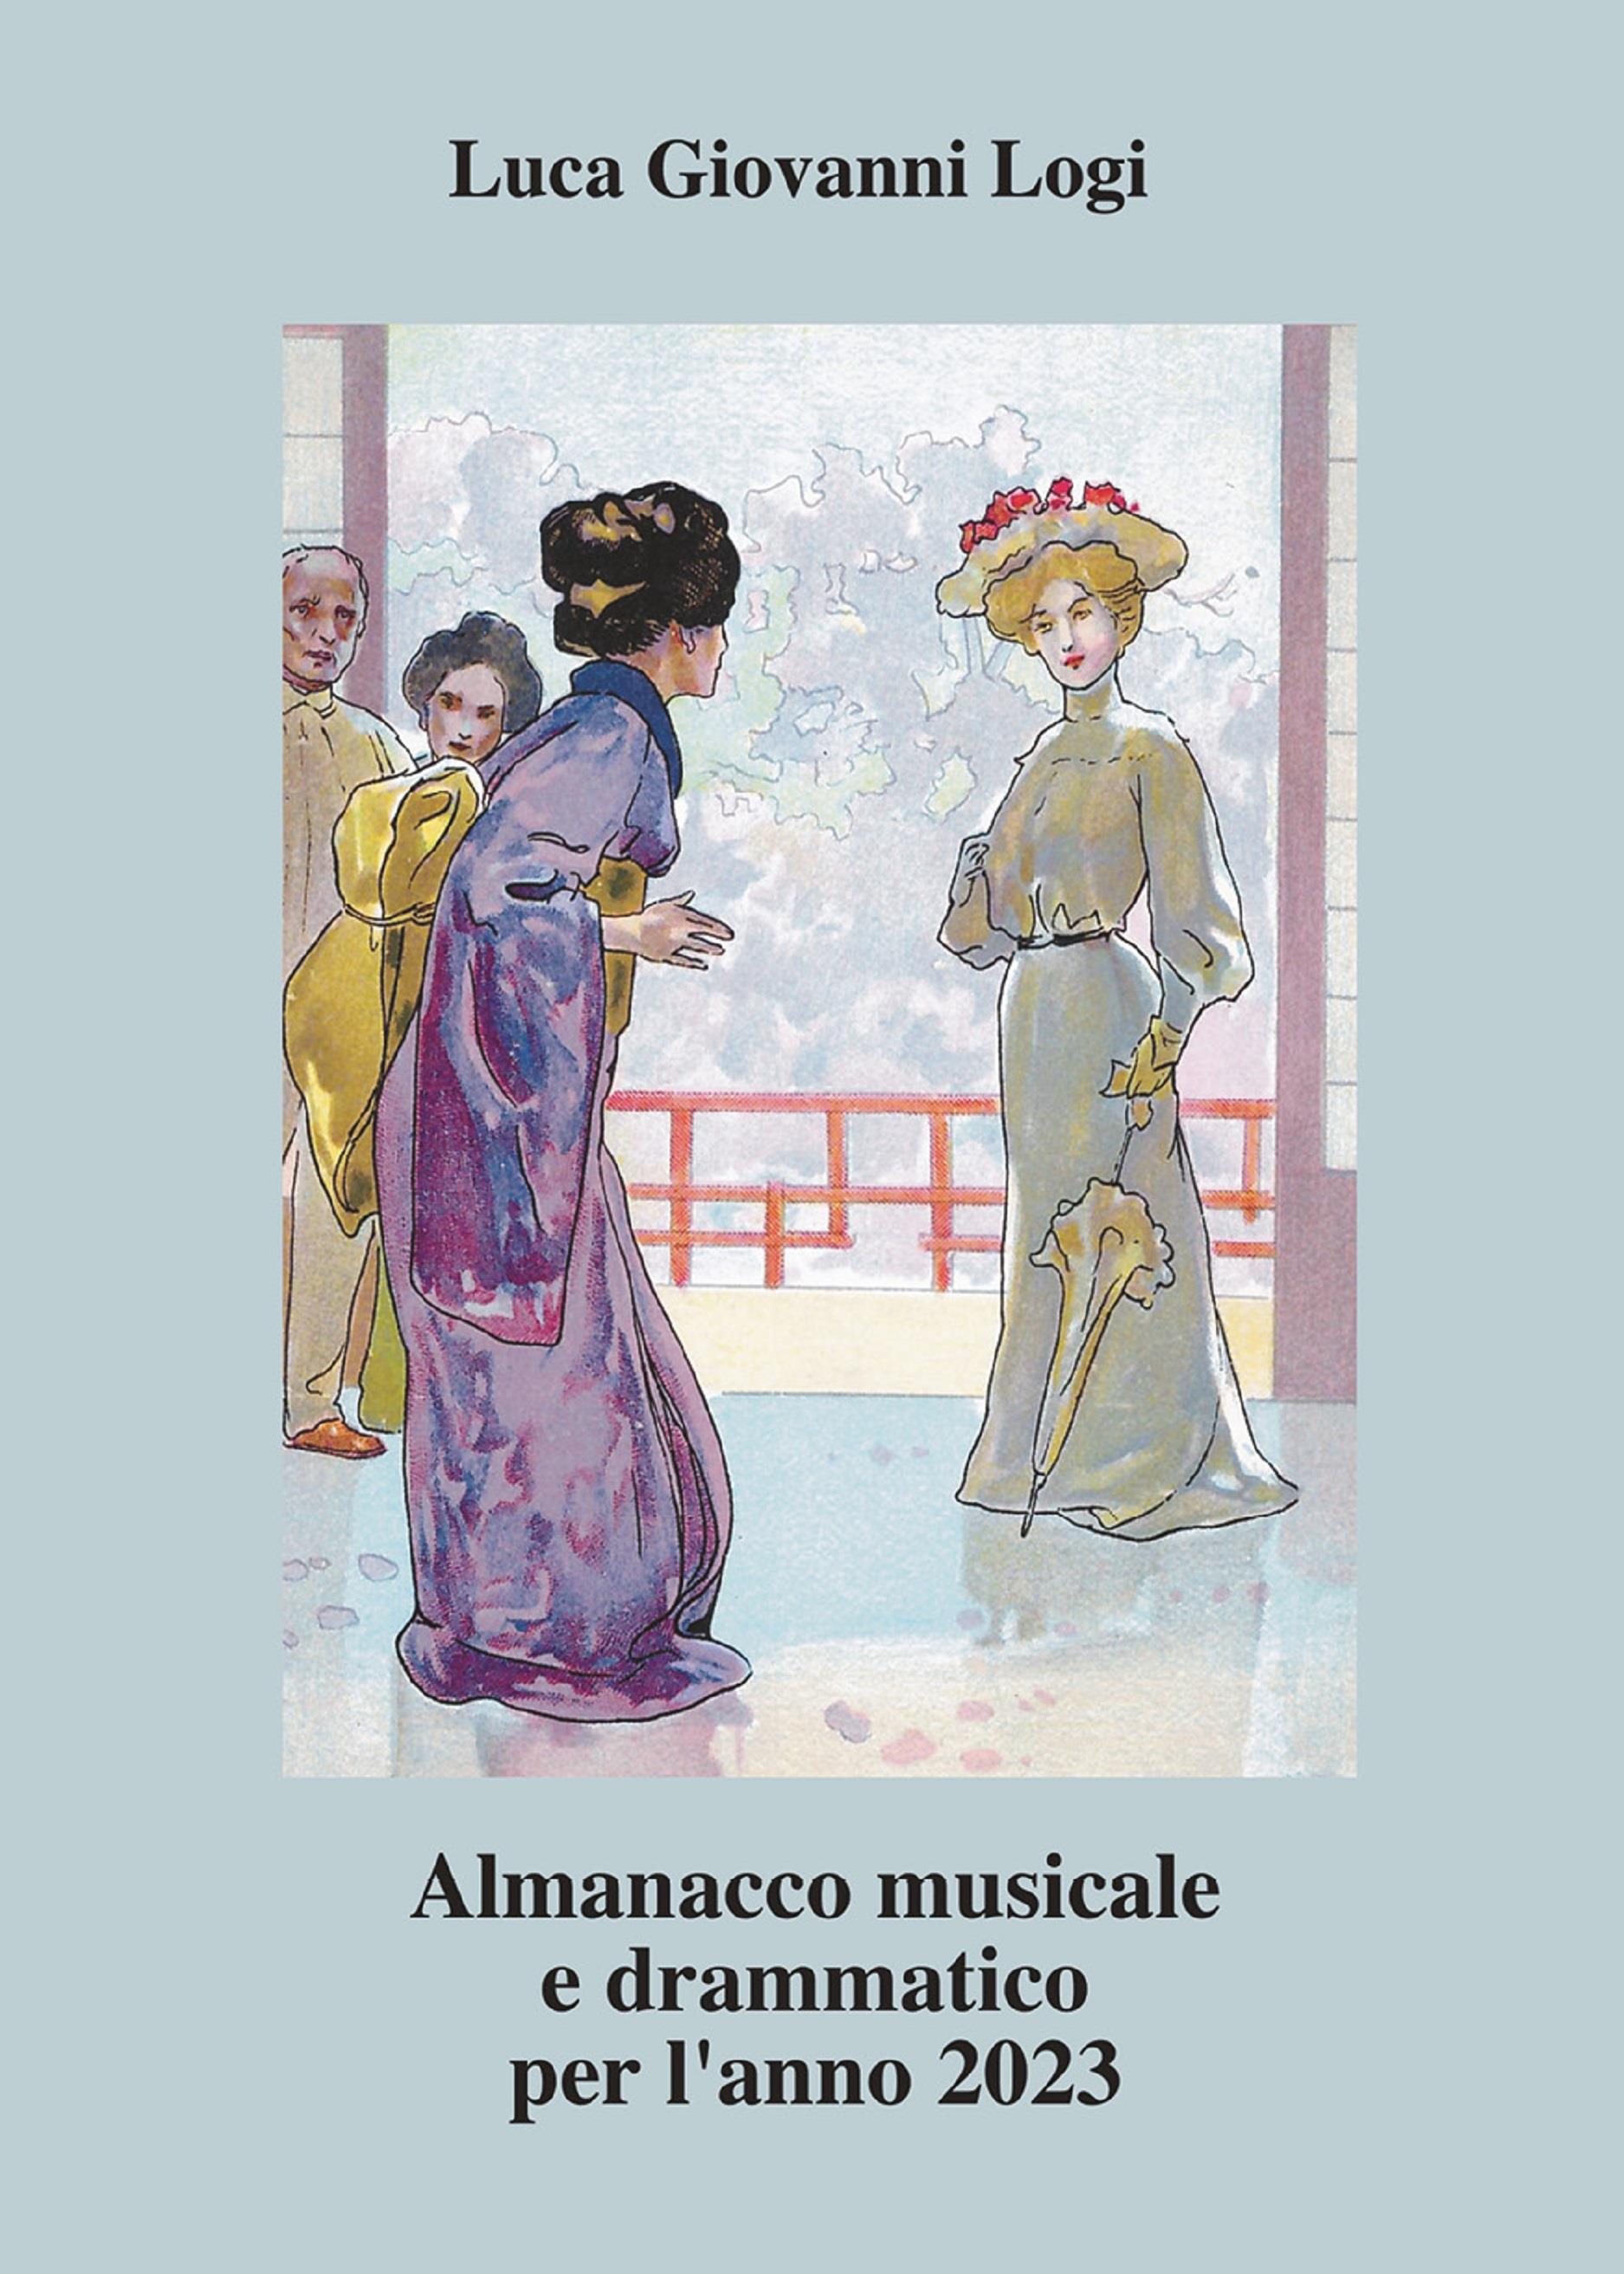 Almanacco musicale e drammatico per l'anno 2023